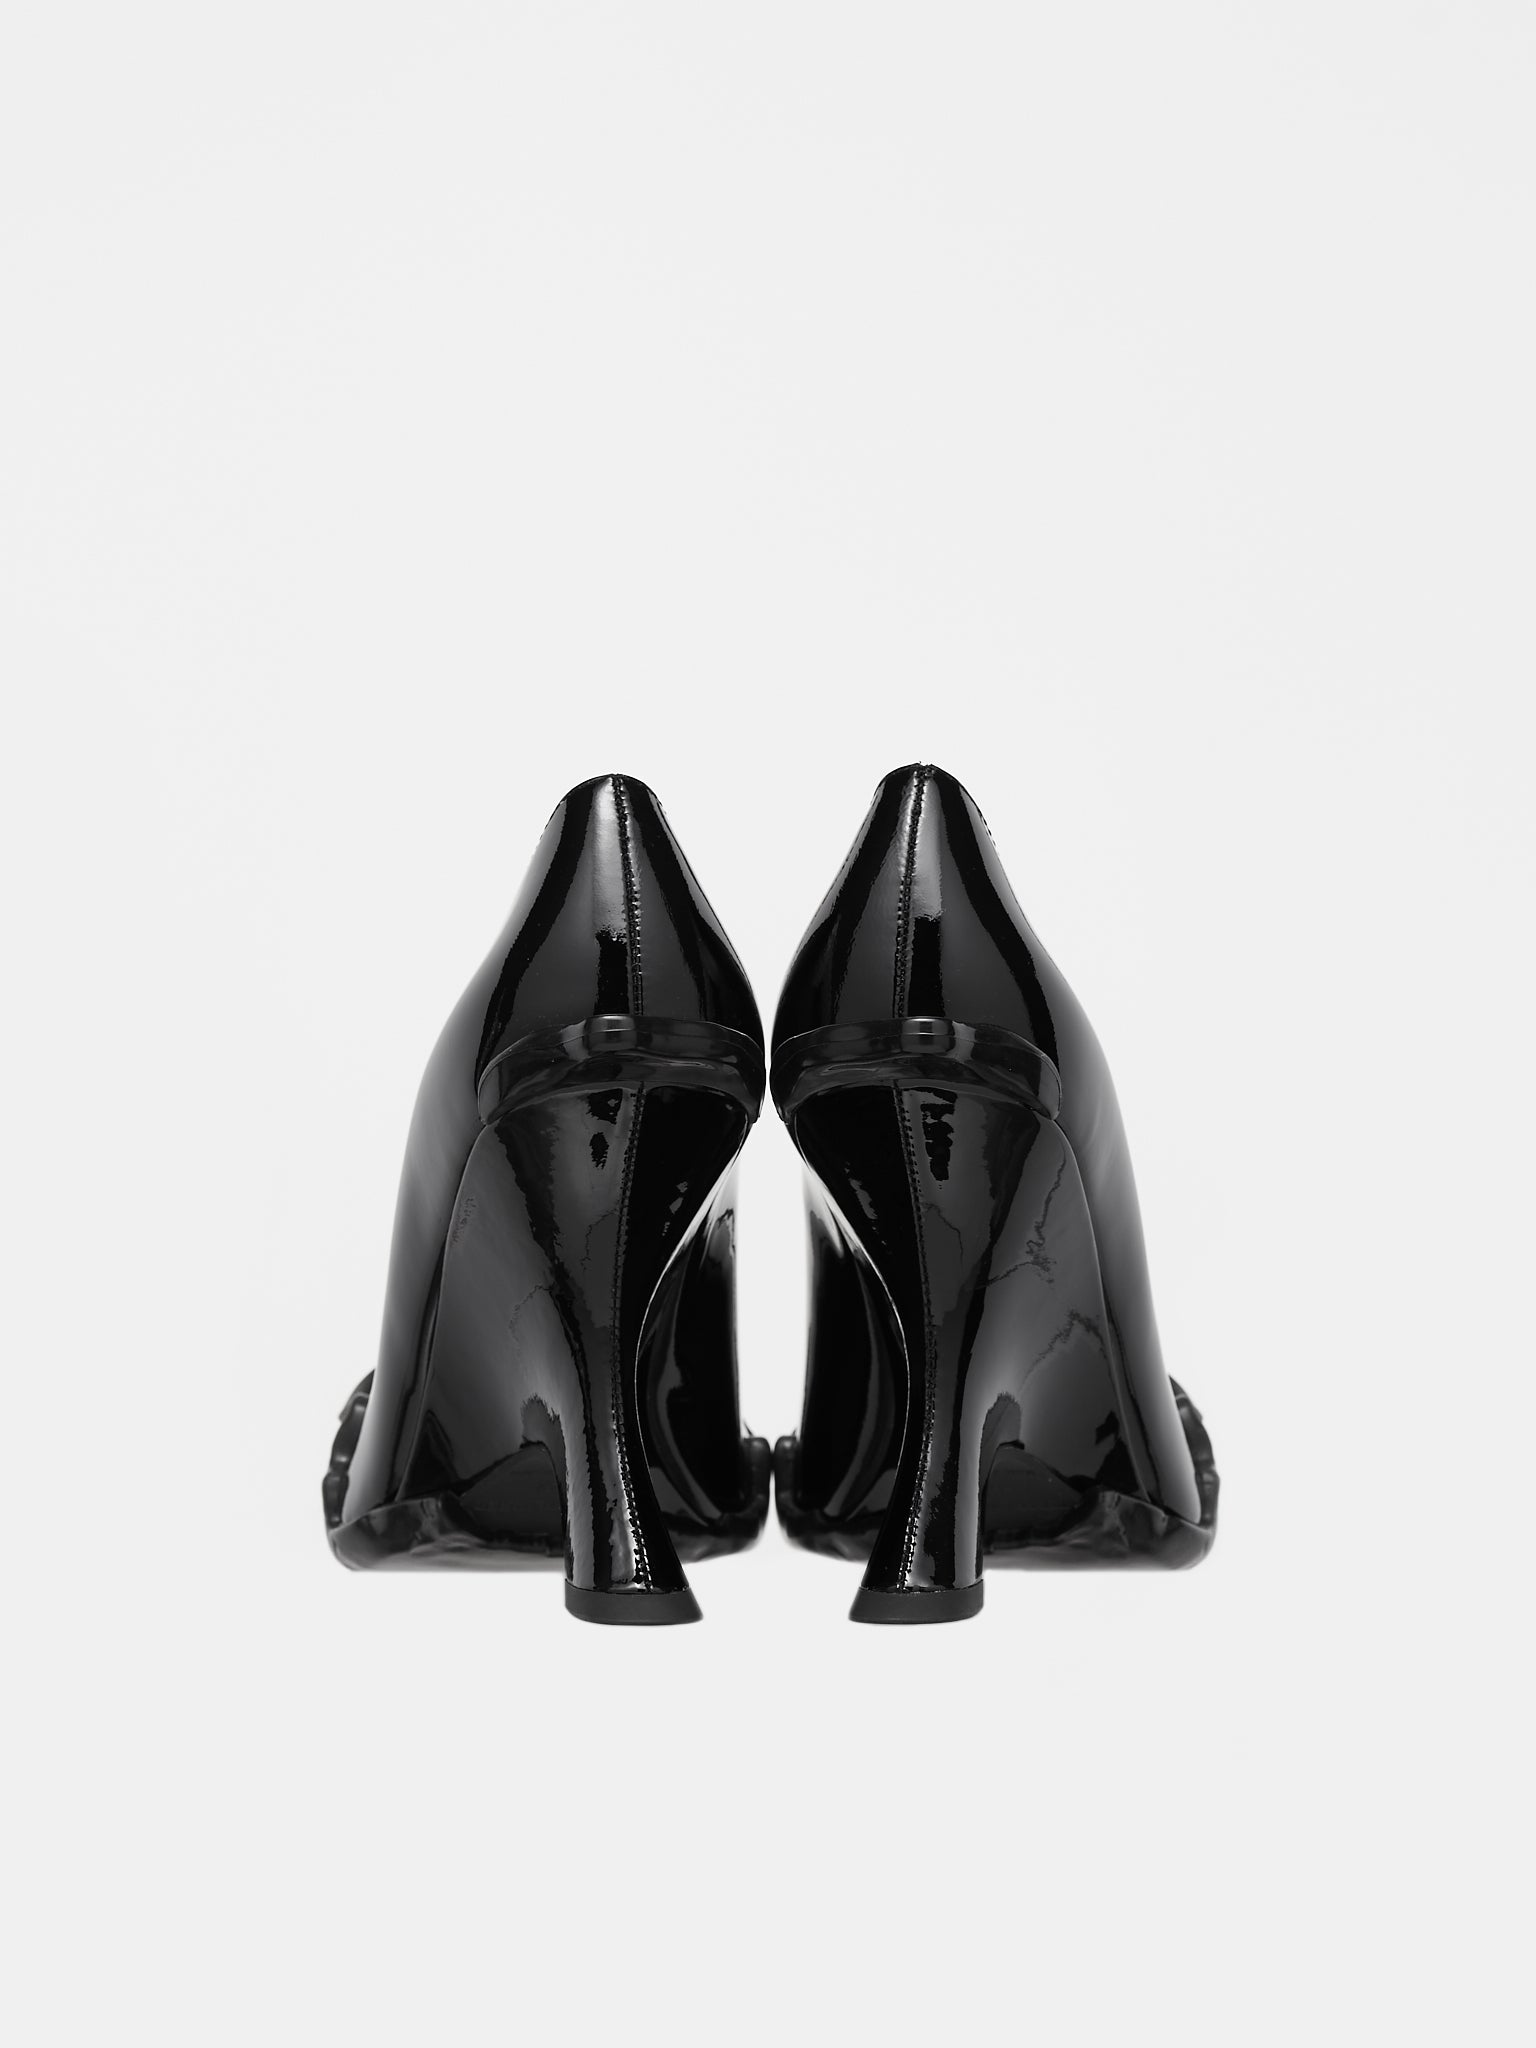 Rubbed Wedge Heels (3101201-BLACK-MATT)